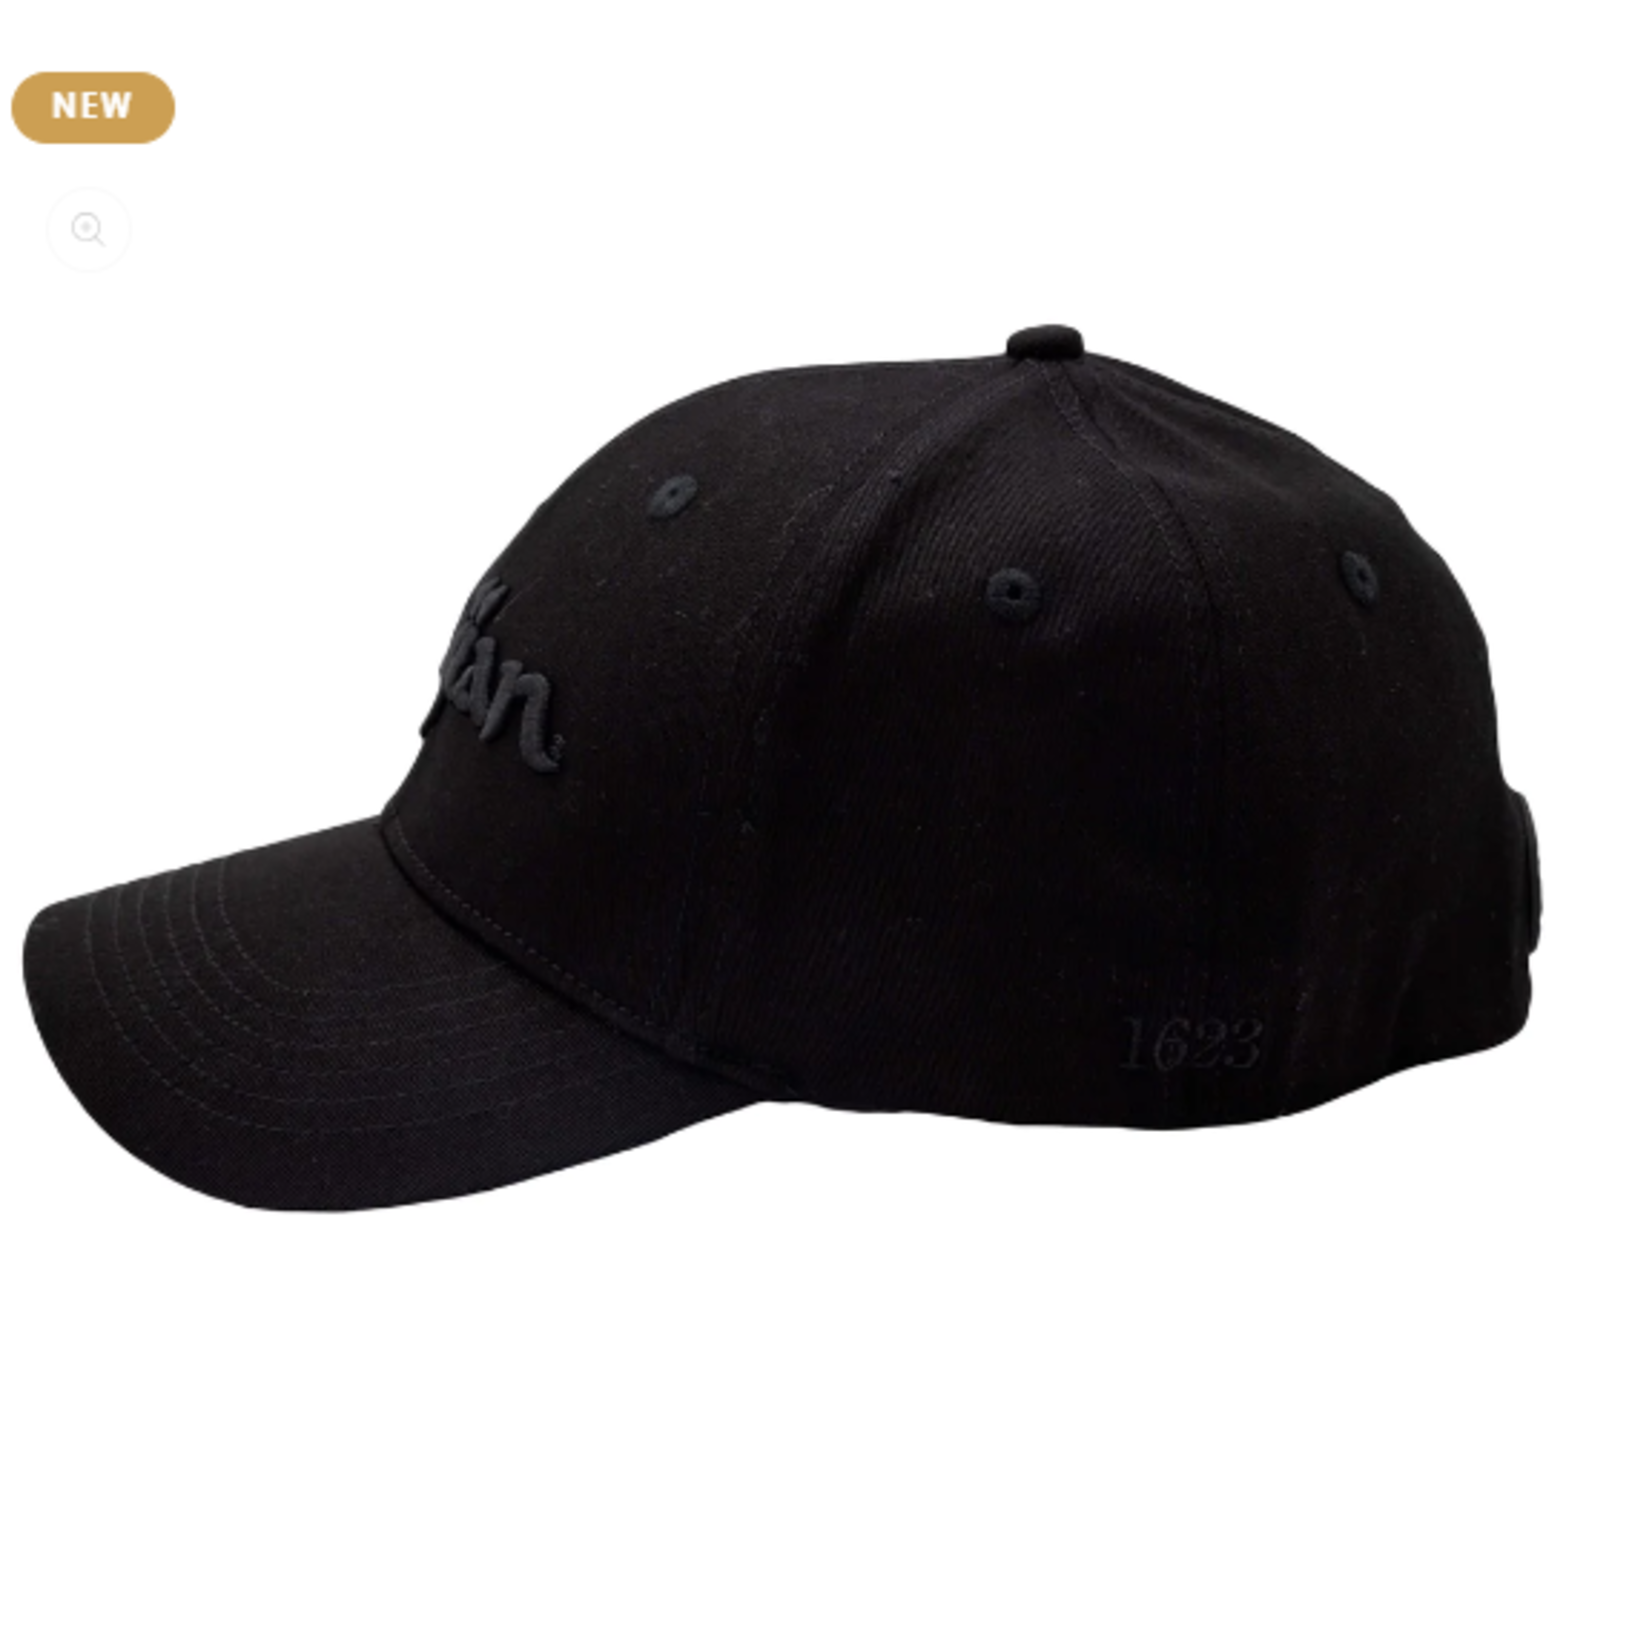 Zildjian Zildjian Blackout Stretch Fit Hat